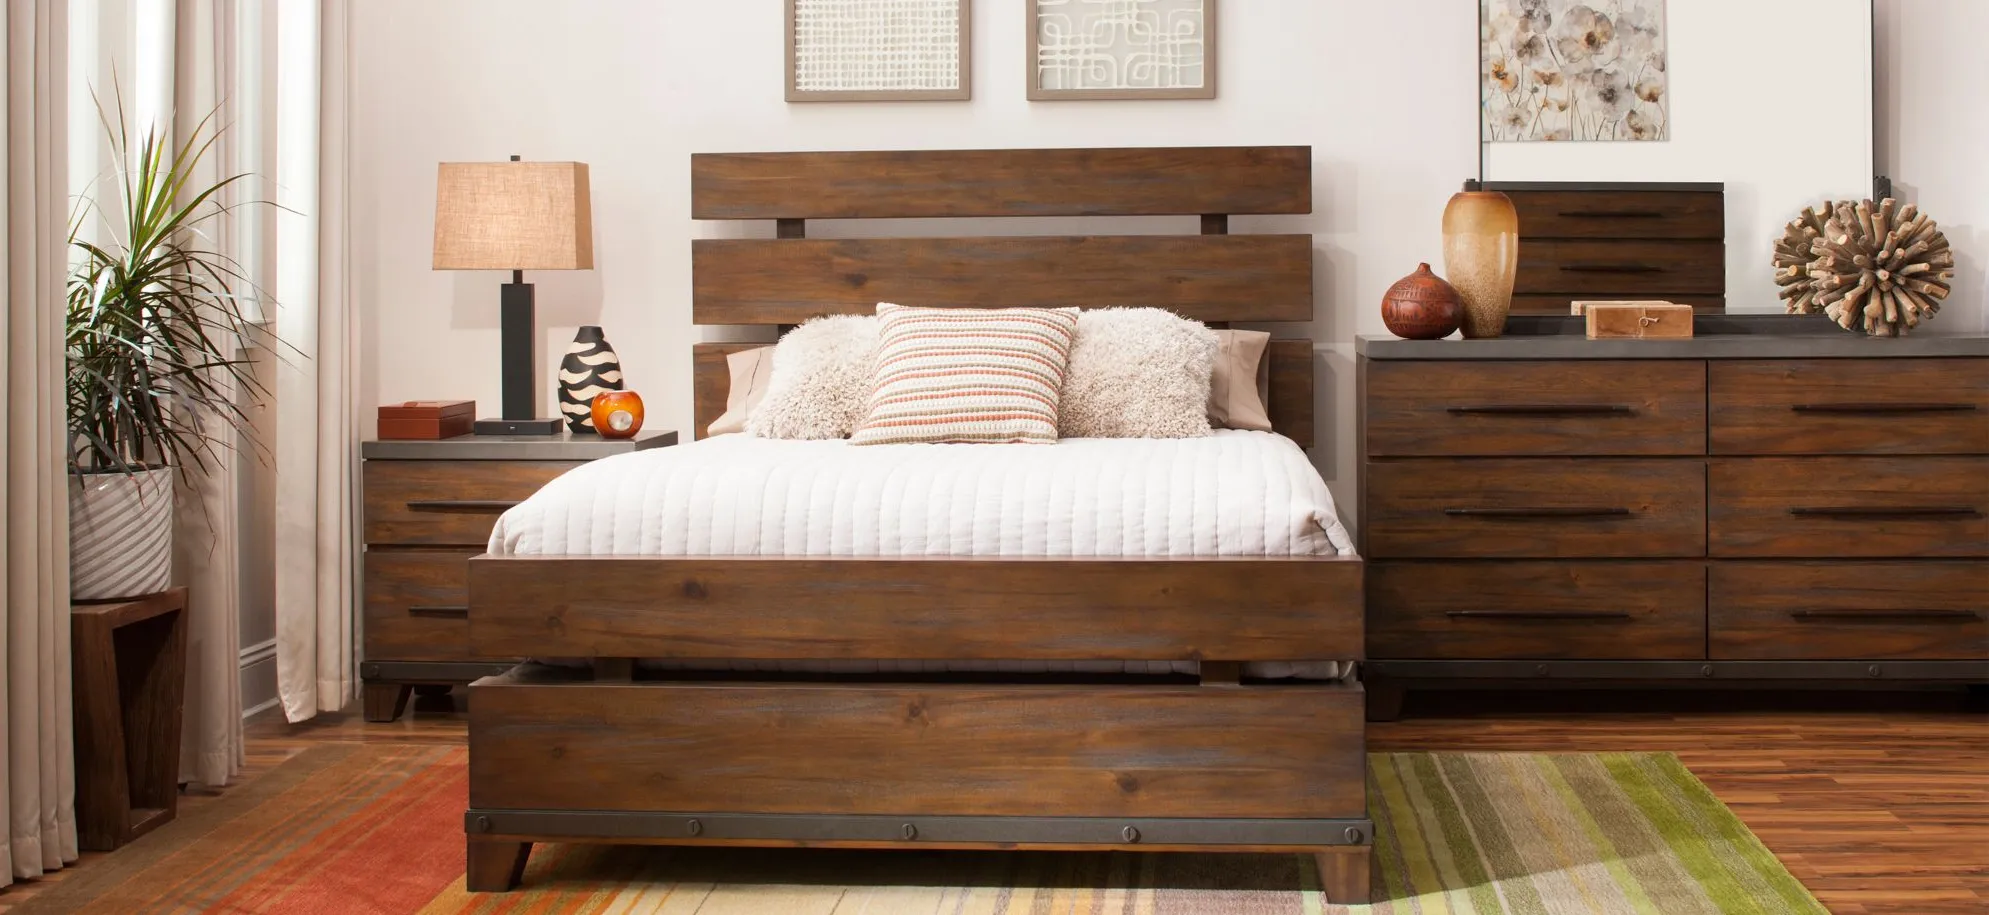 Santa Cruz 4-pc. Bedroom Set in Brown by Bellanest